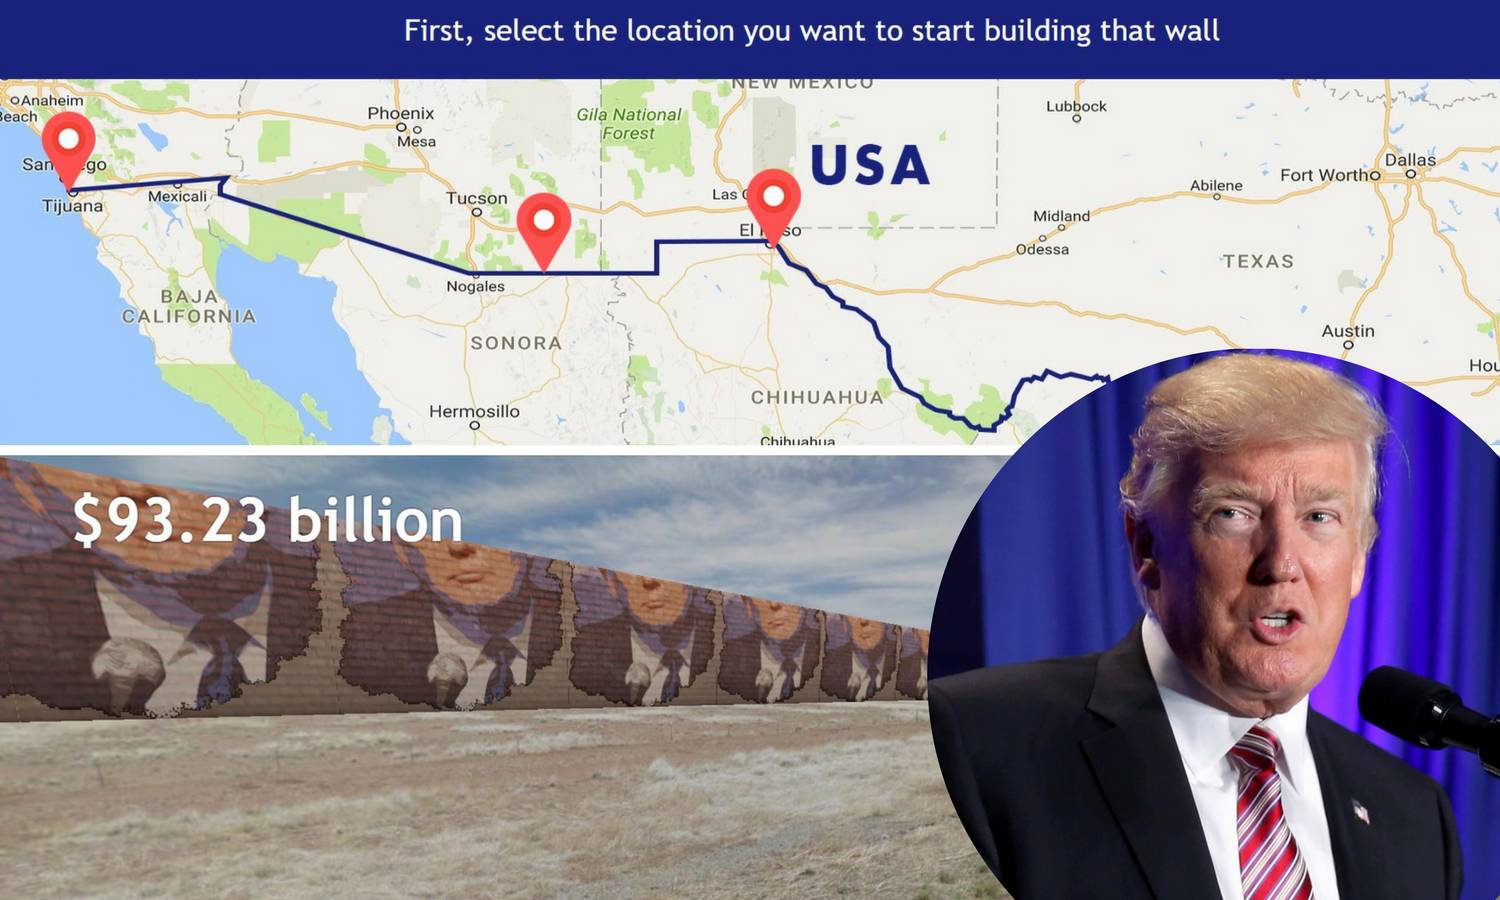 Izgradite i vi svoj Trumpov zid, otkrijte koliko bi vas to koštalo